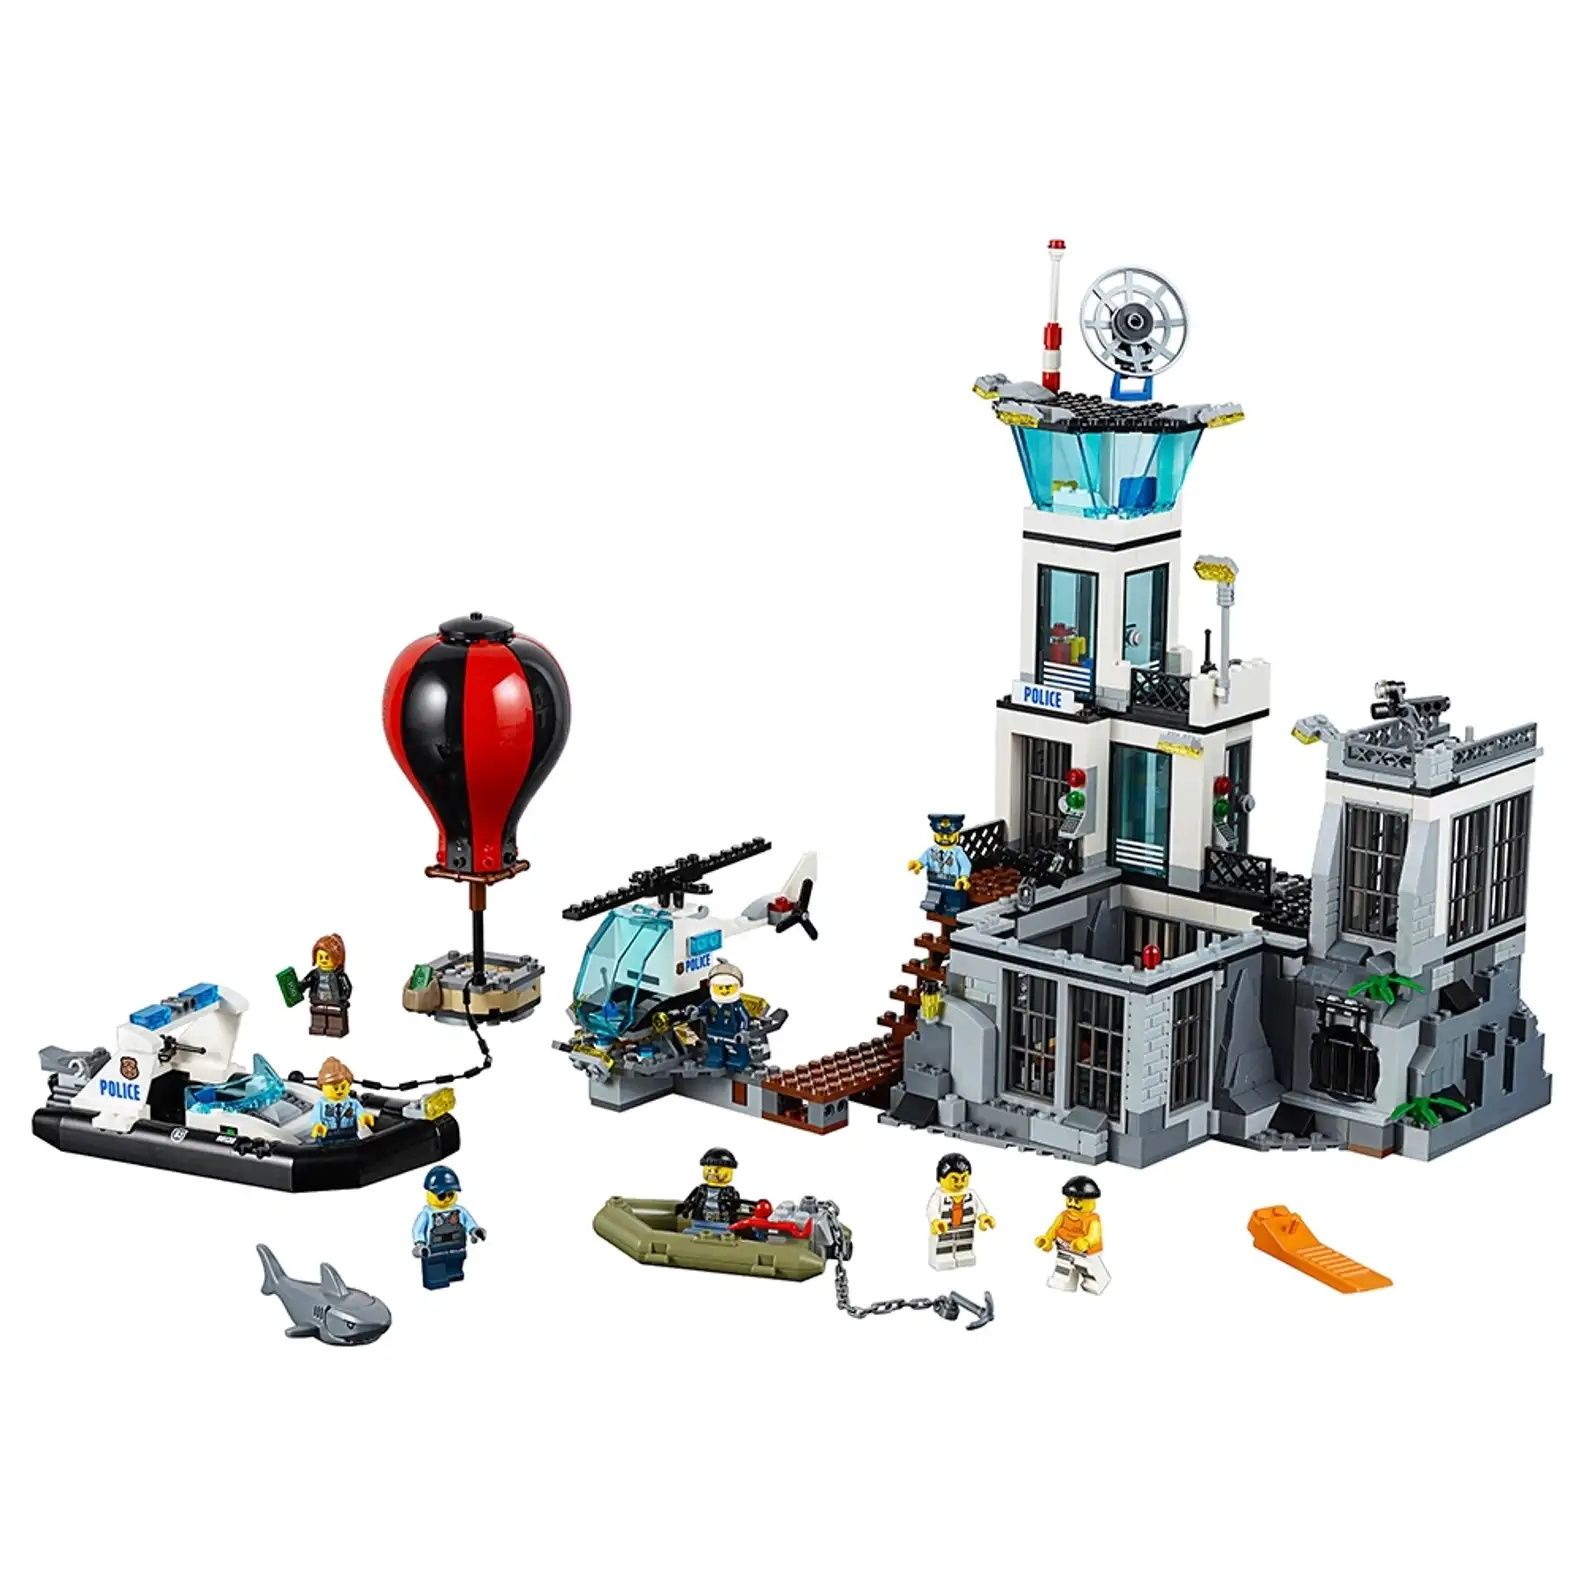 Lego 60130 island